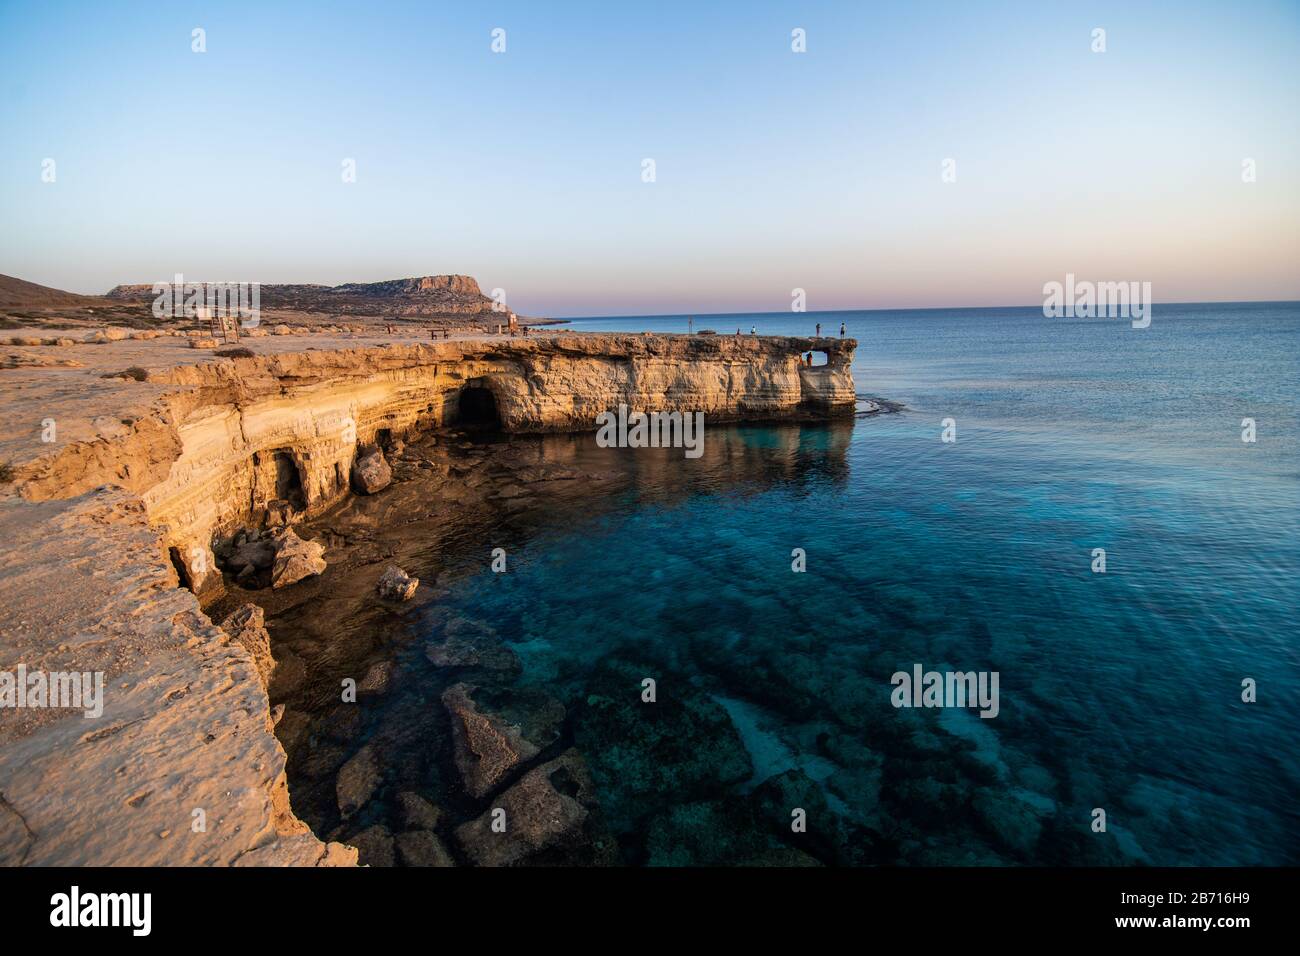 Arco de piedra y mar. Cape Greko, Agia Napa, Chipre Foto de stock